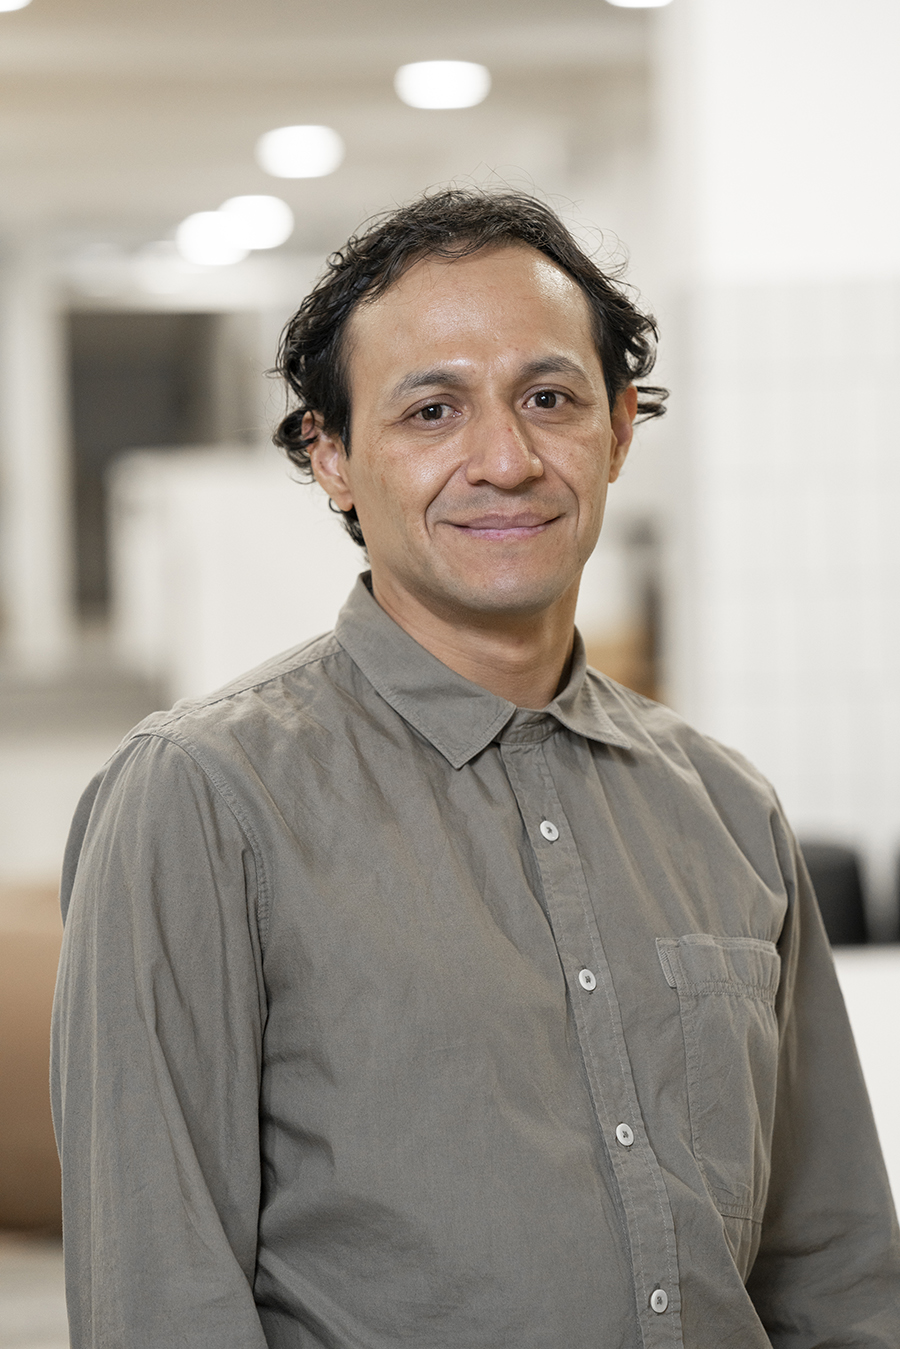 ProdLib Developer Paul Villavicencio